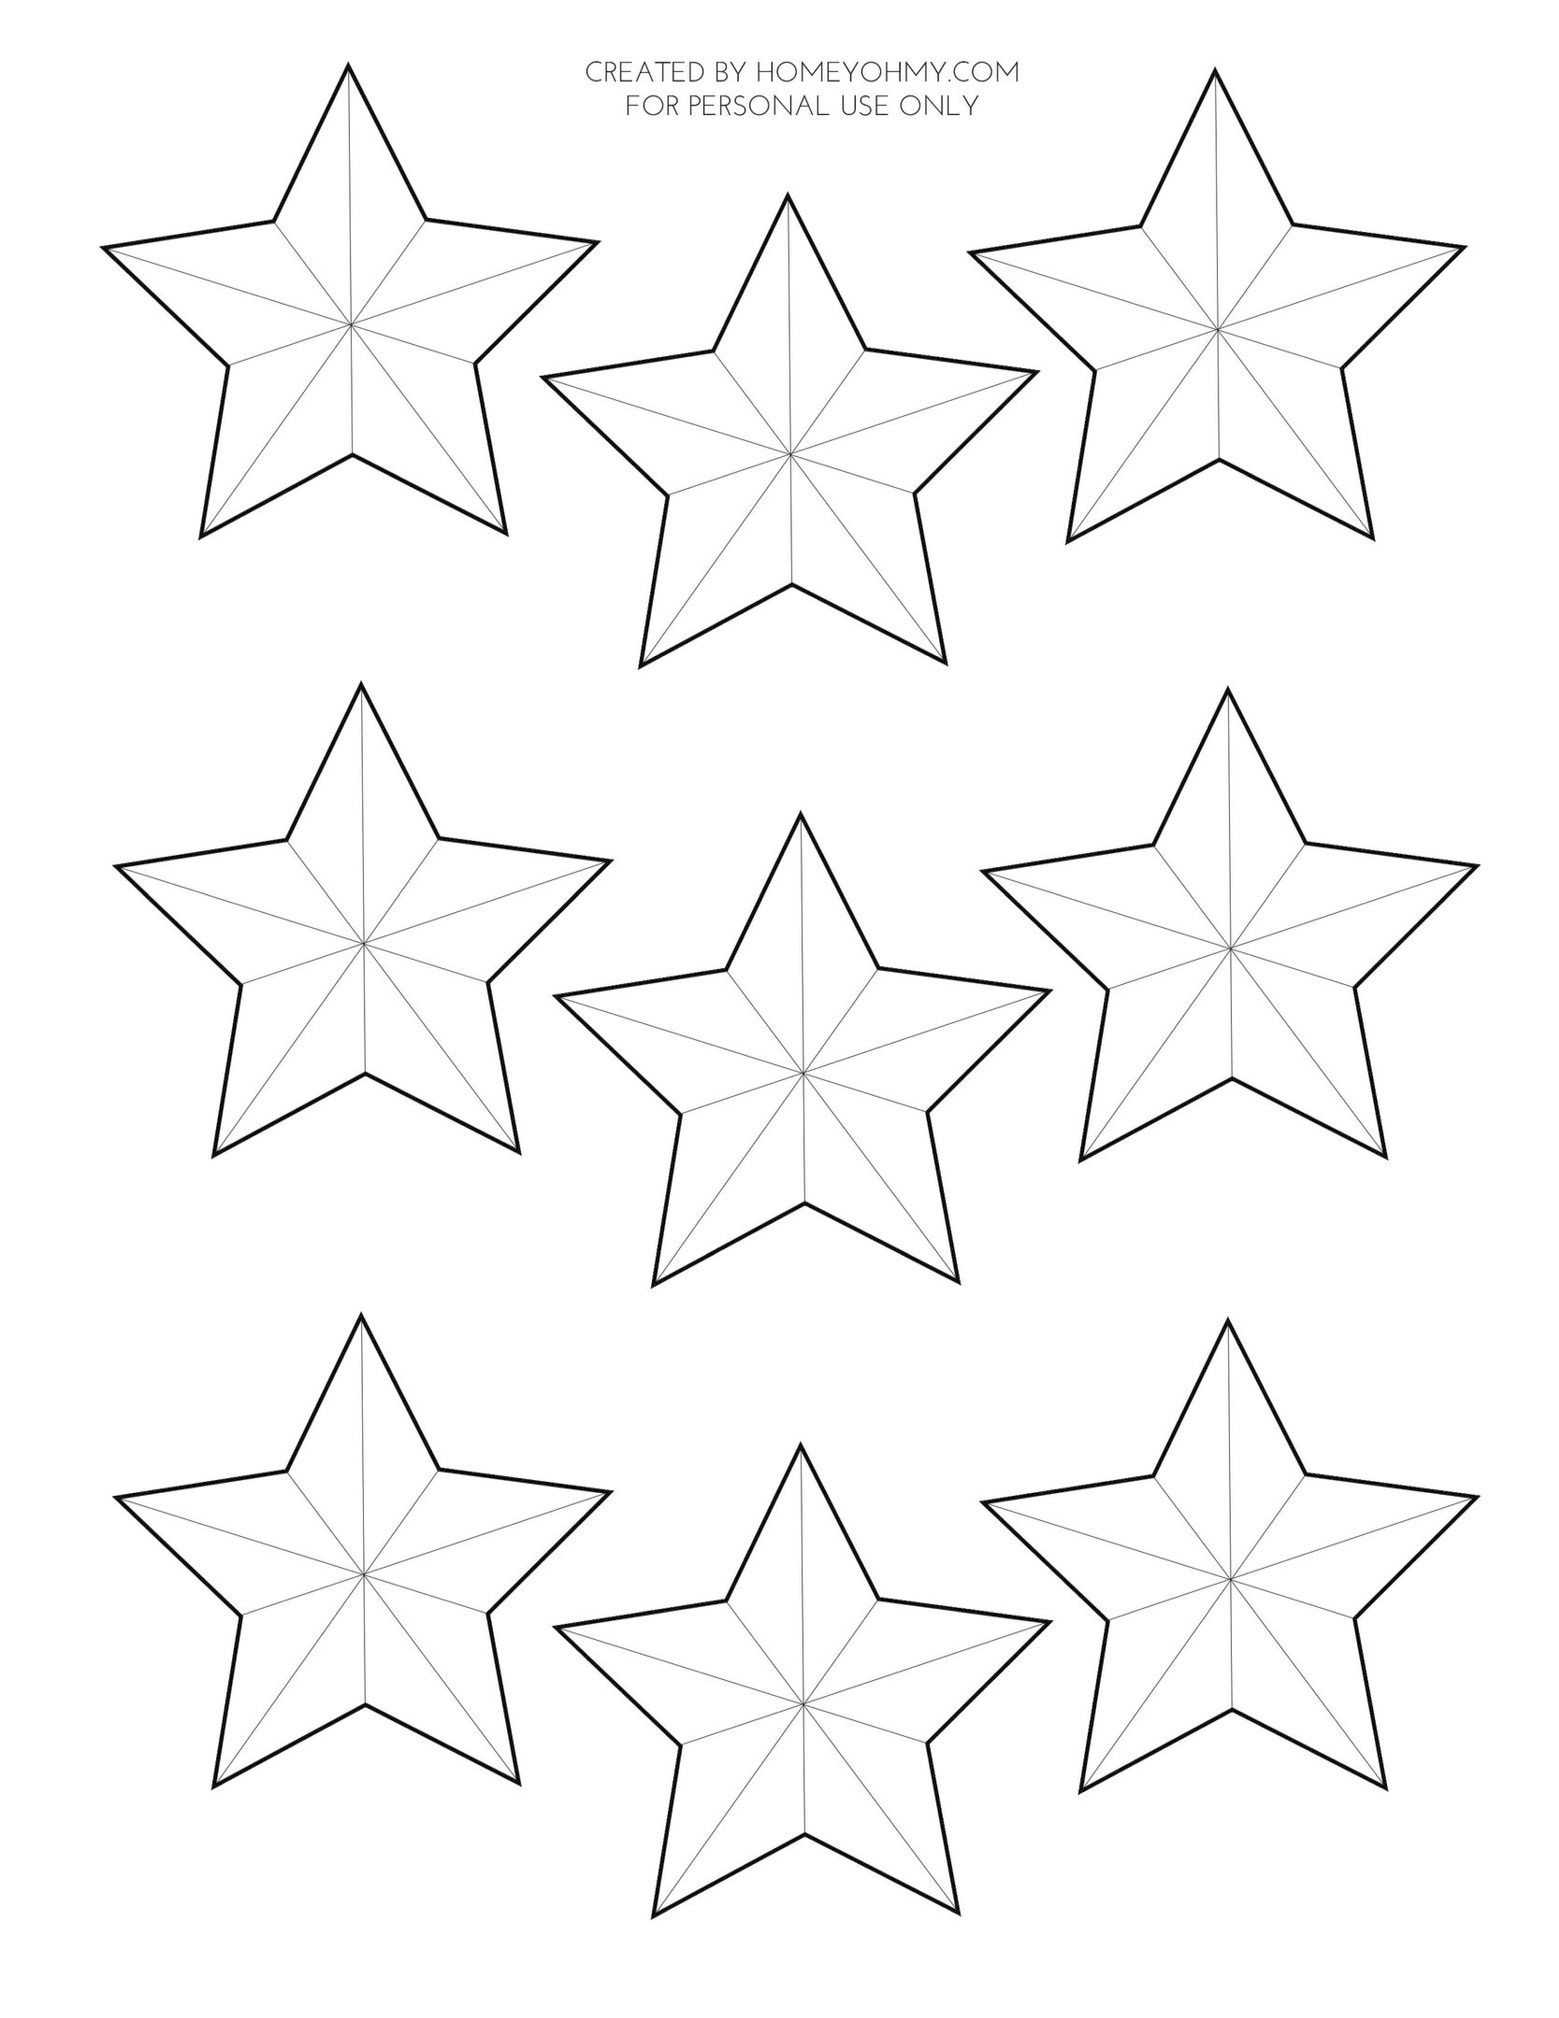 Звезда трафарет для вырезания из бумаги: готовые шаблоны для работы и фото поделок